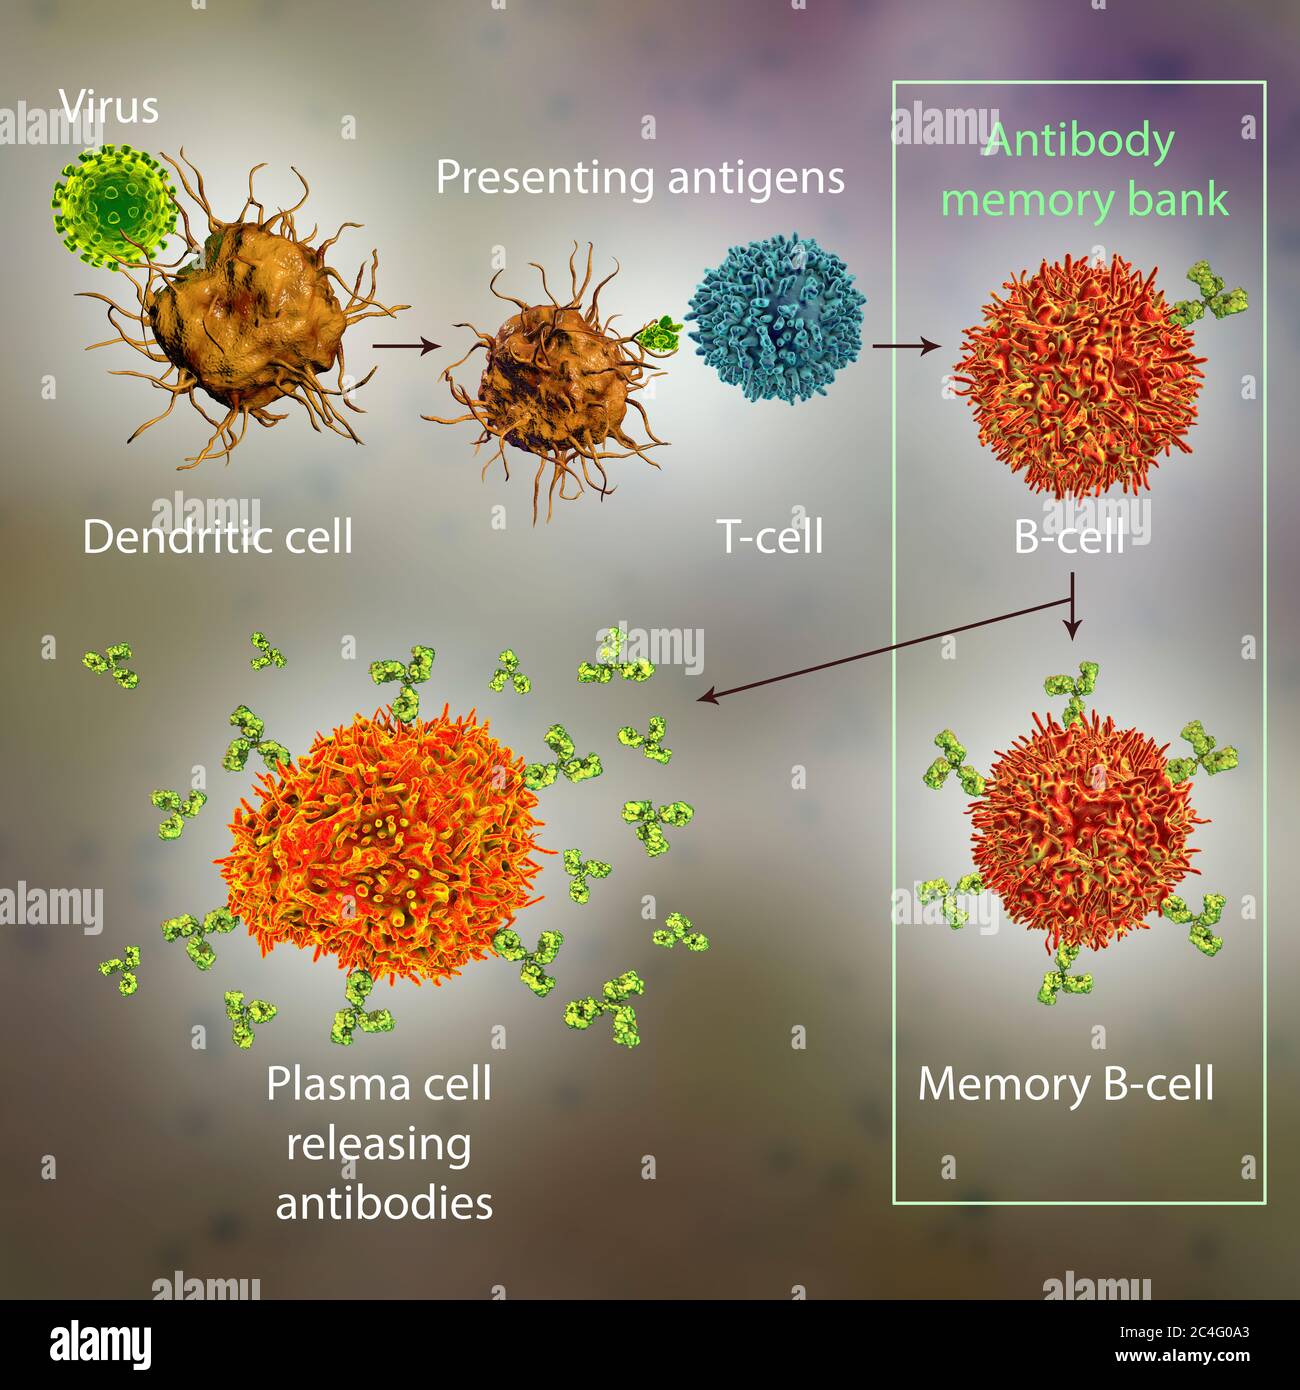 Mecanismos de defensa inmunitaria contra virus, ilustración informática.  Las células dendríticas reconocen los virus y presentan información sobre  sus antígenos a las células T (linfocitos T). Las células T proporcionan  información sobre